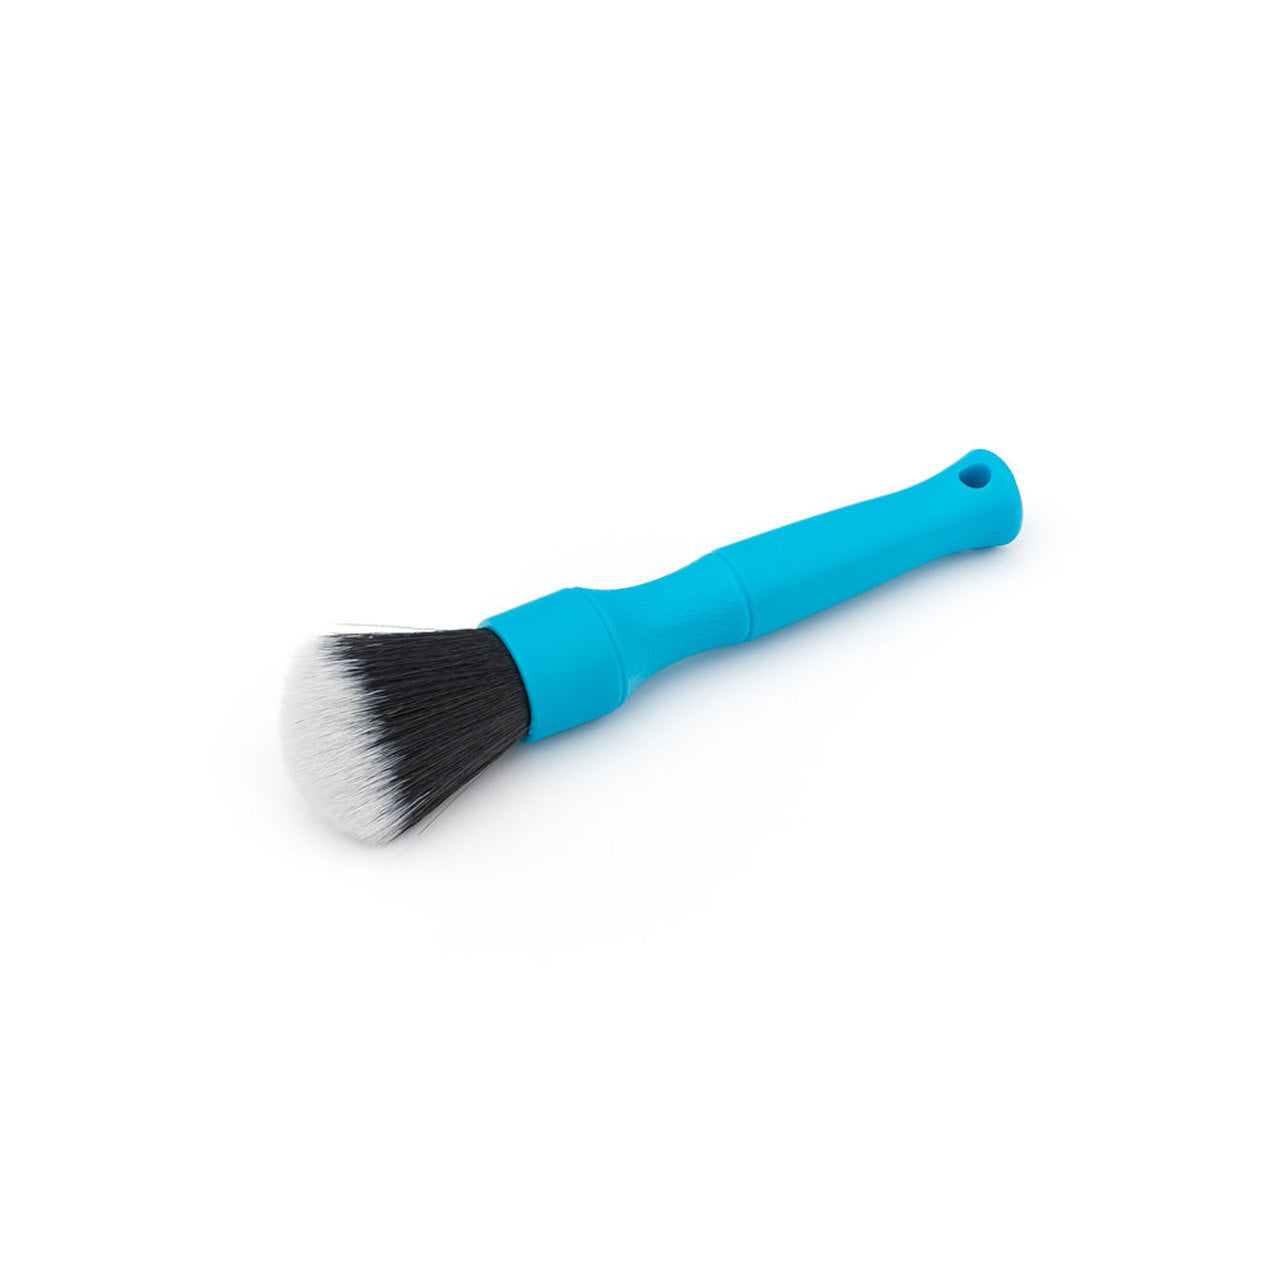 DETAIL FACTORY Detailing Brush (BLUE)